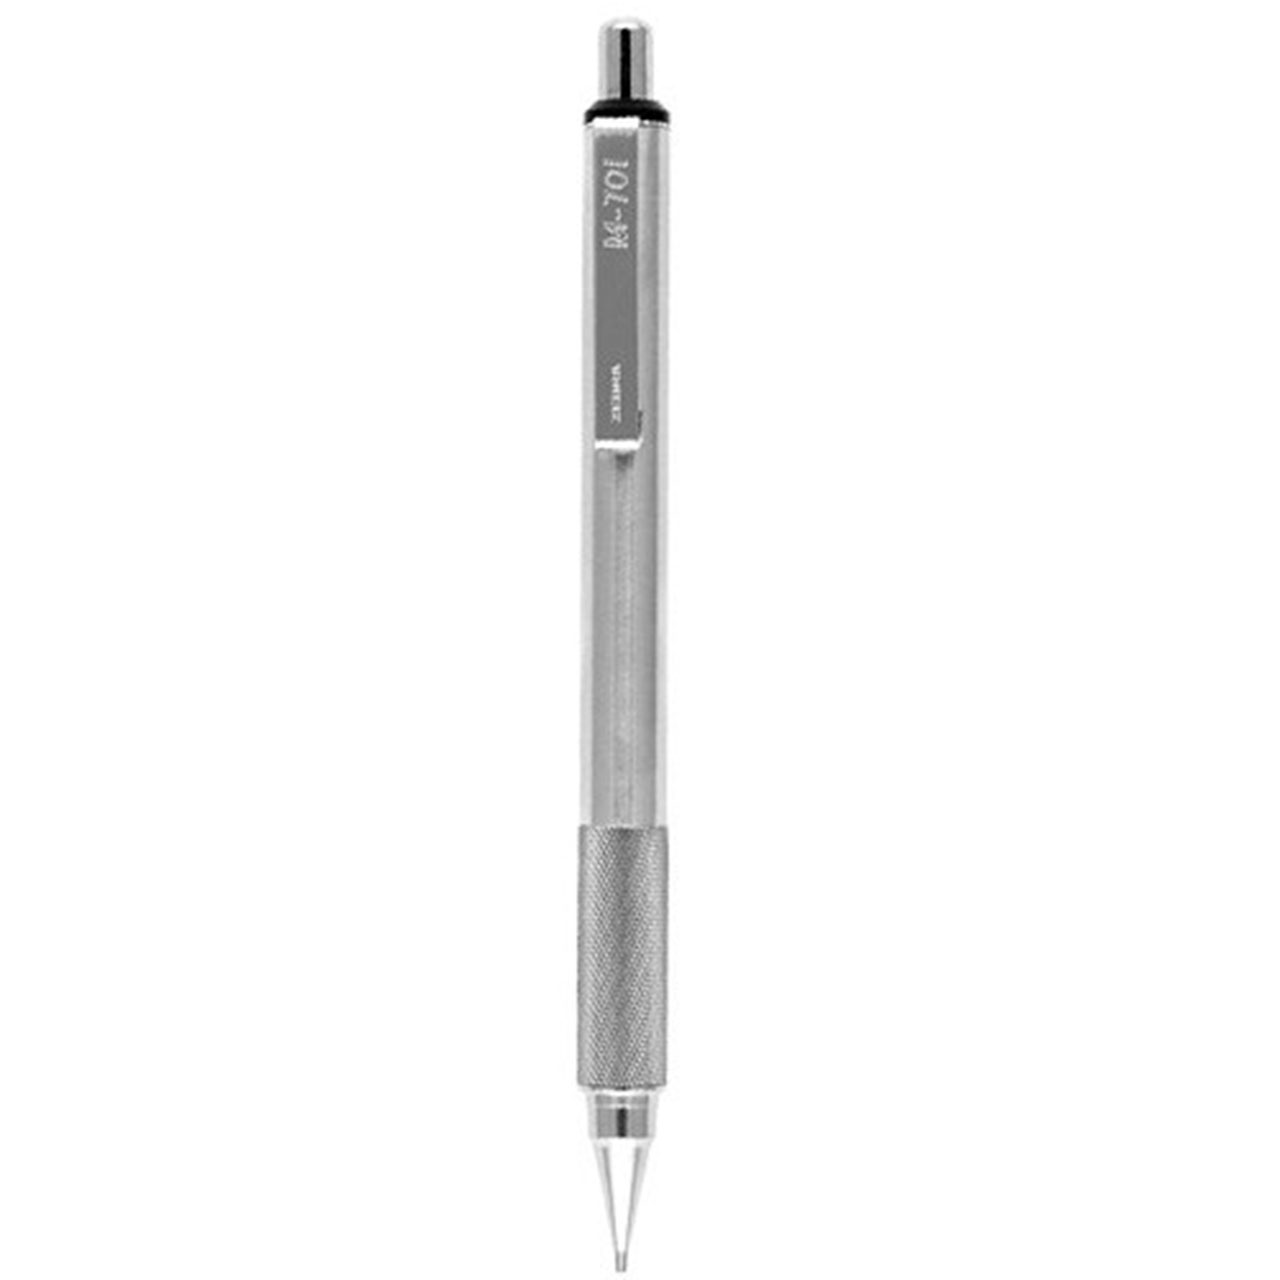 مداد نوکی 0.7 میلی متری زبرا مدل M-701